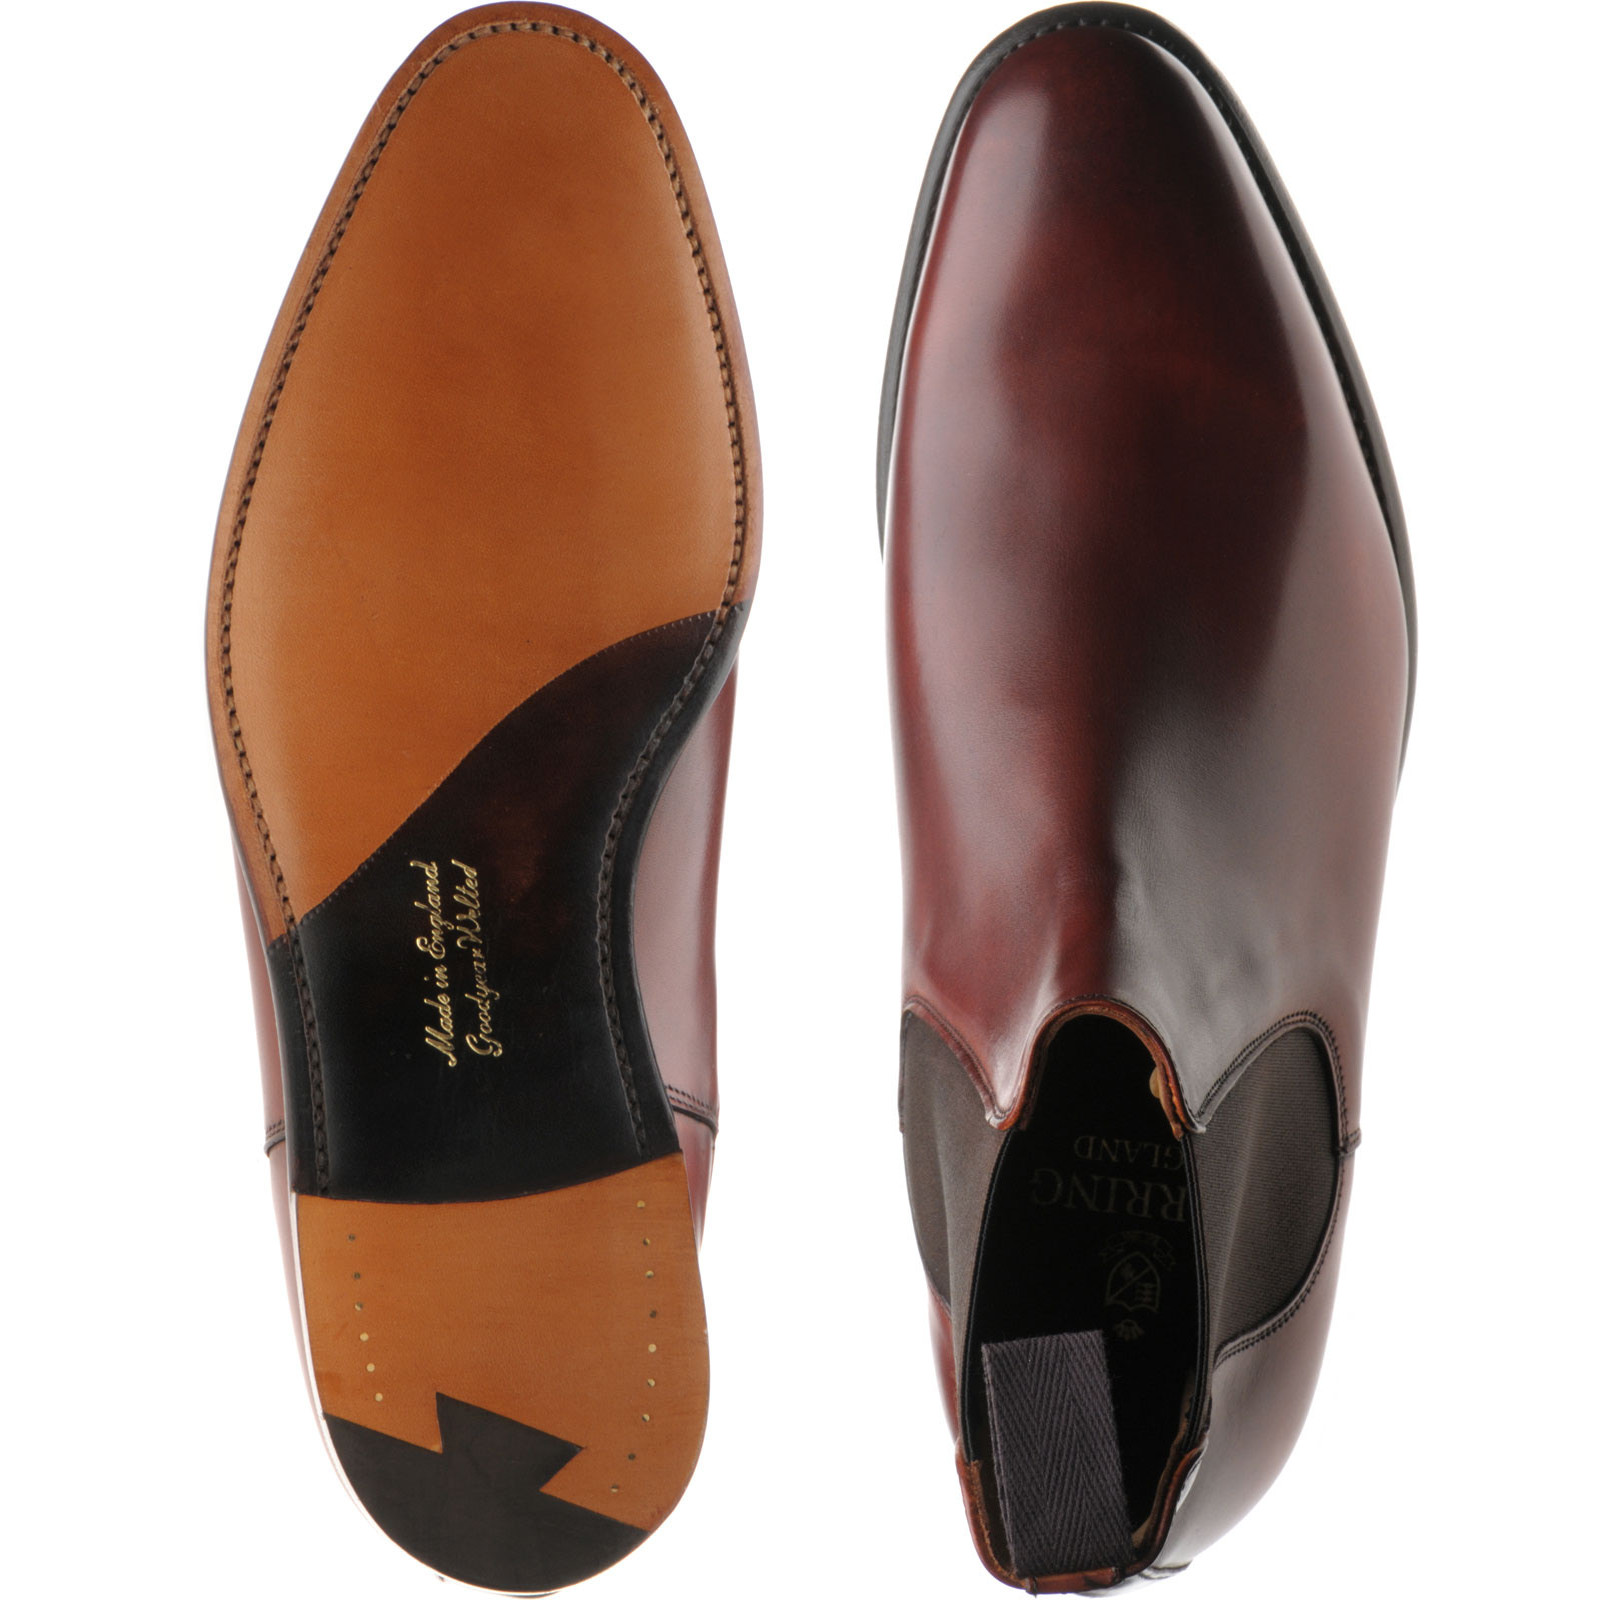 Herring shoes | Herring Premier | Wilson Chelsea boots in Dark Leaf ...